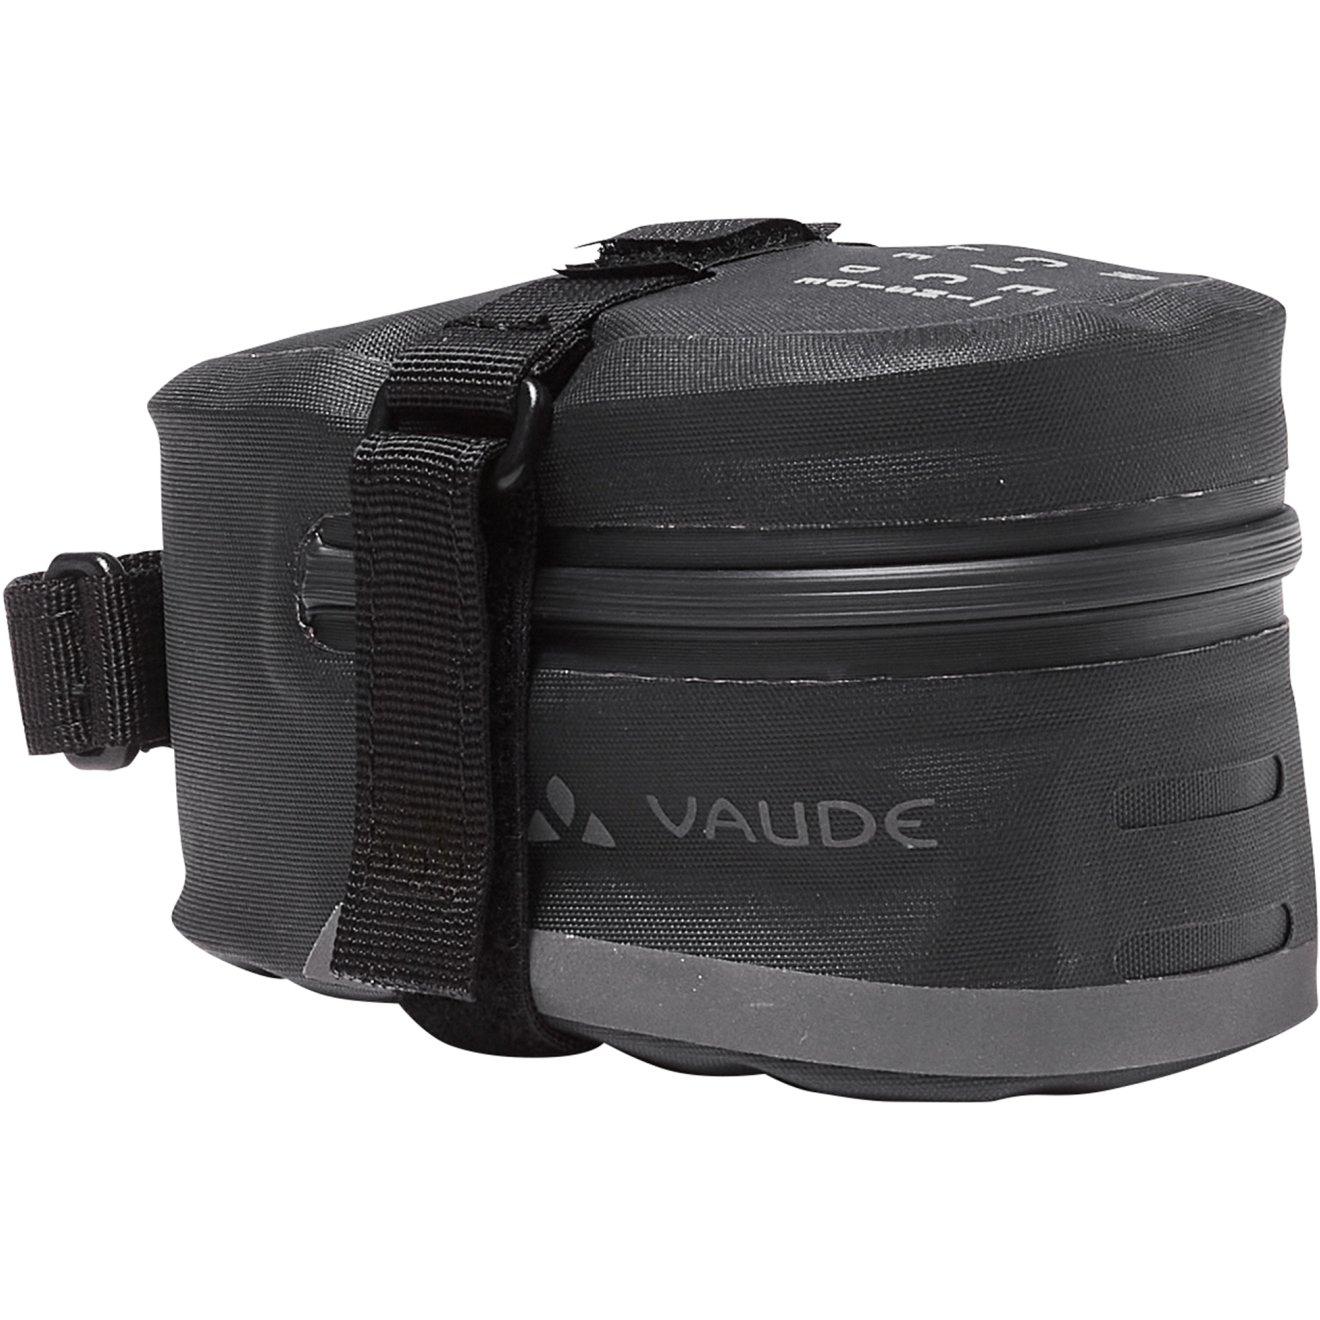 Produktbild von Vaude Tool Aqua M Satteltasche - 0.9L - schwarz